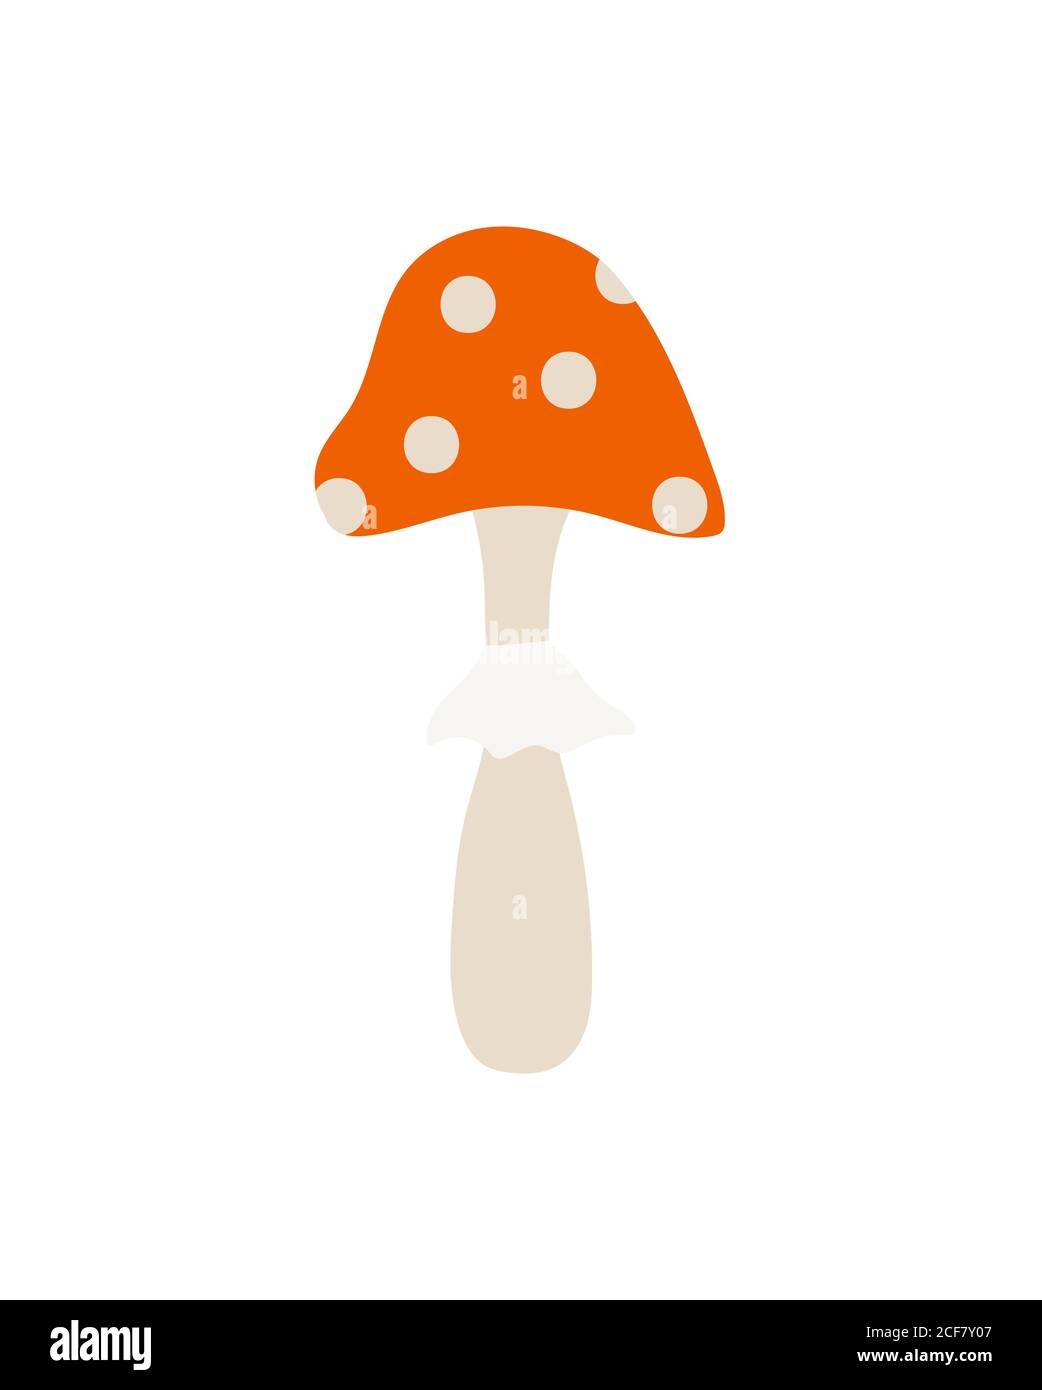 Handgezeichneter Pilz isoliert auf weißem Hintergrund. Fliege agarischer, giftiger Pilz. Roter Hut mit weißen Punkten. Stock Vektor